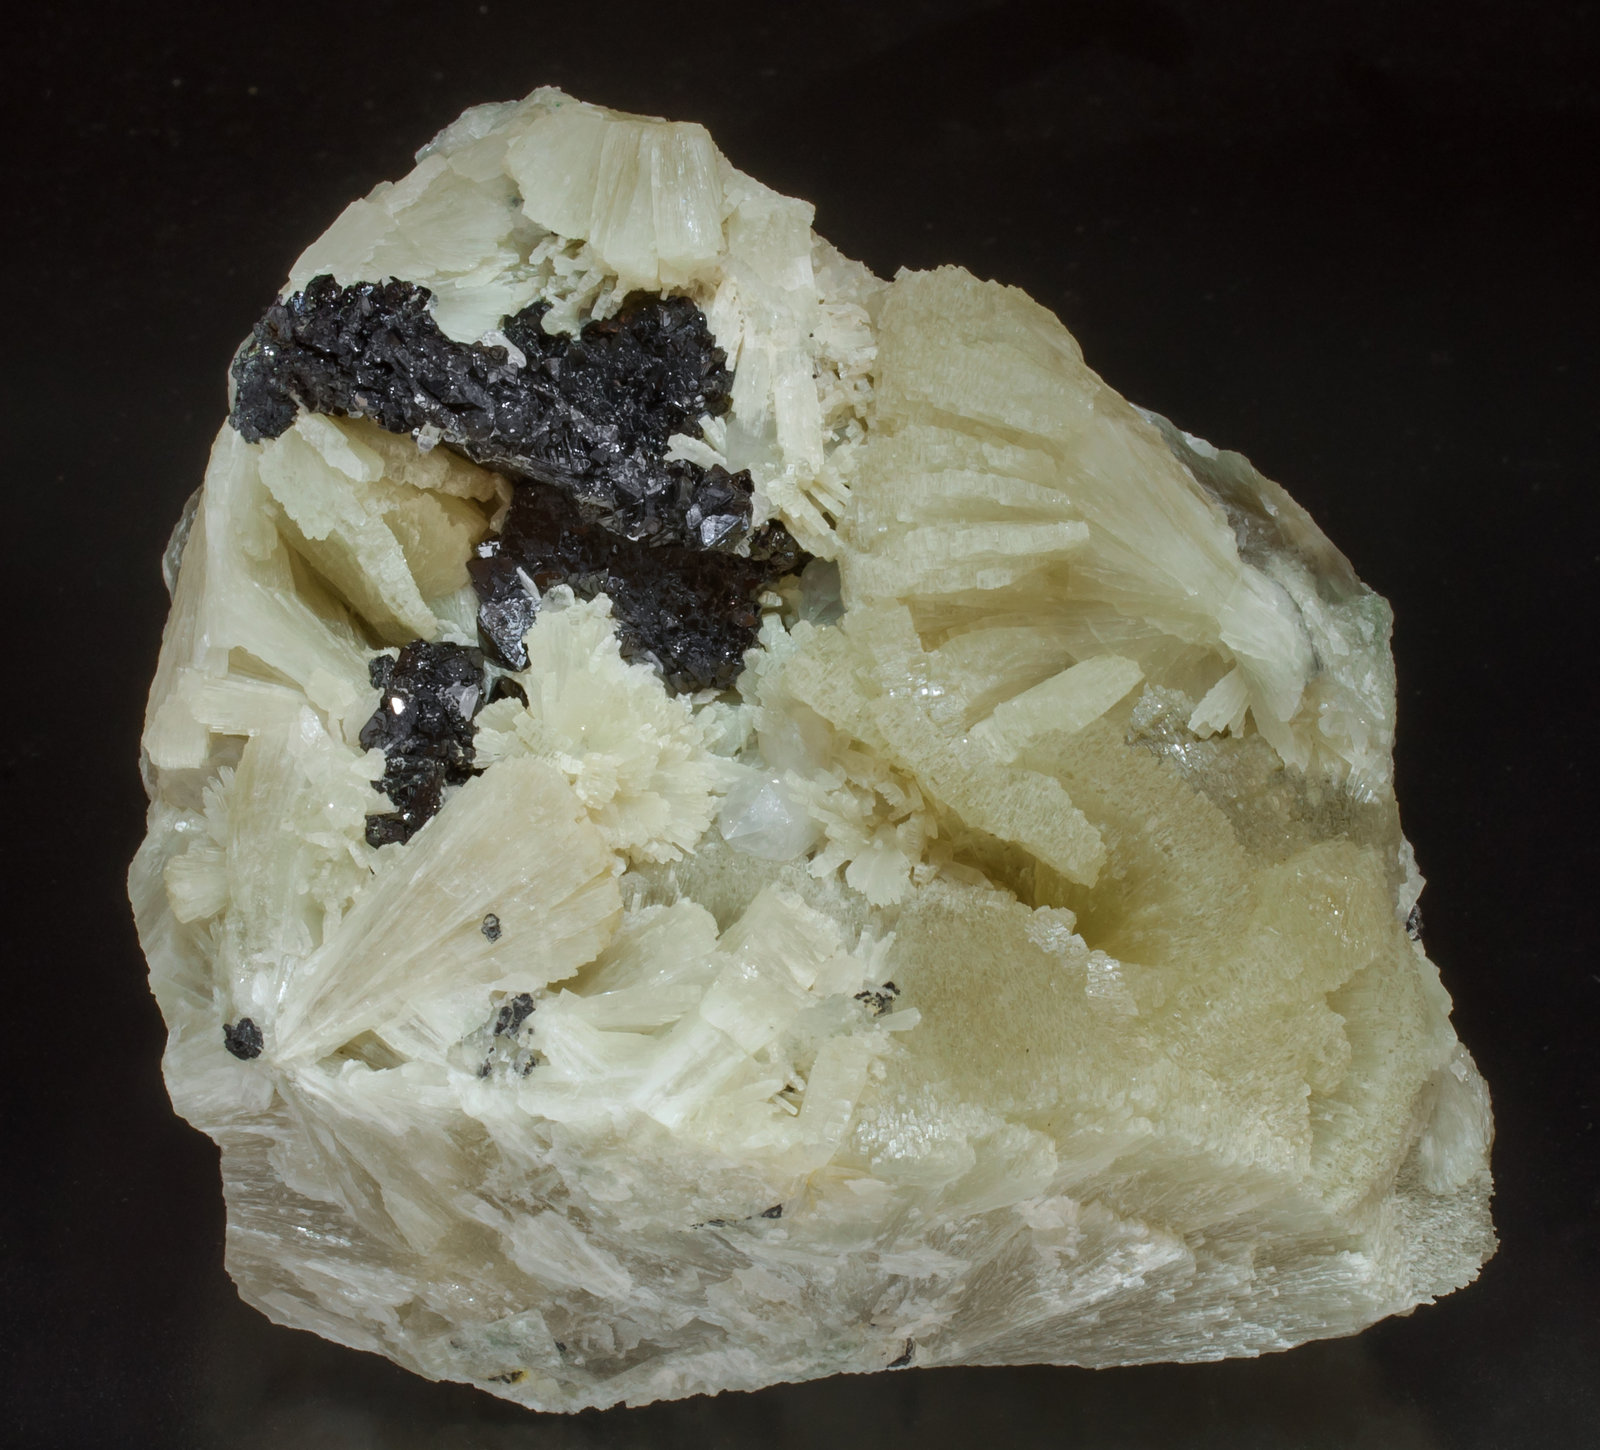 specimens/s_imagesAF3/Hematite-MH66AF3f.jpg